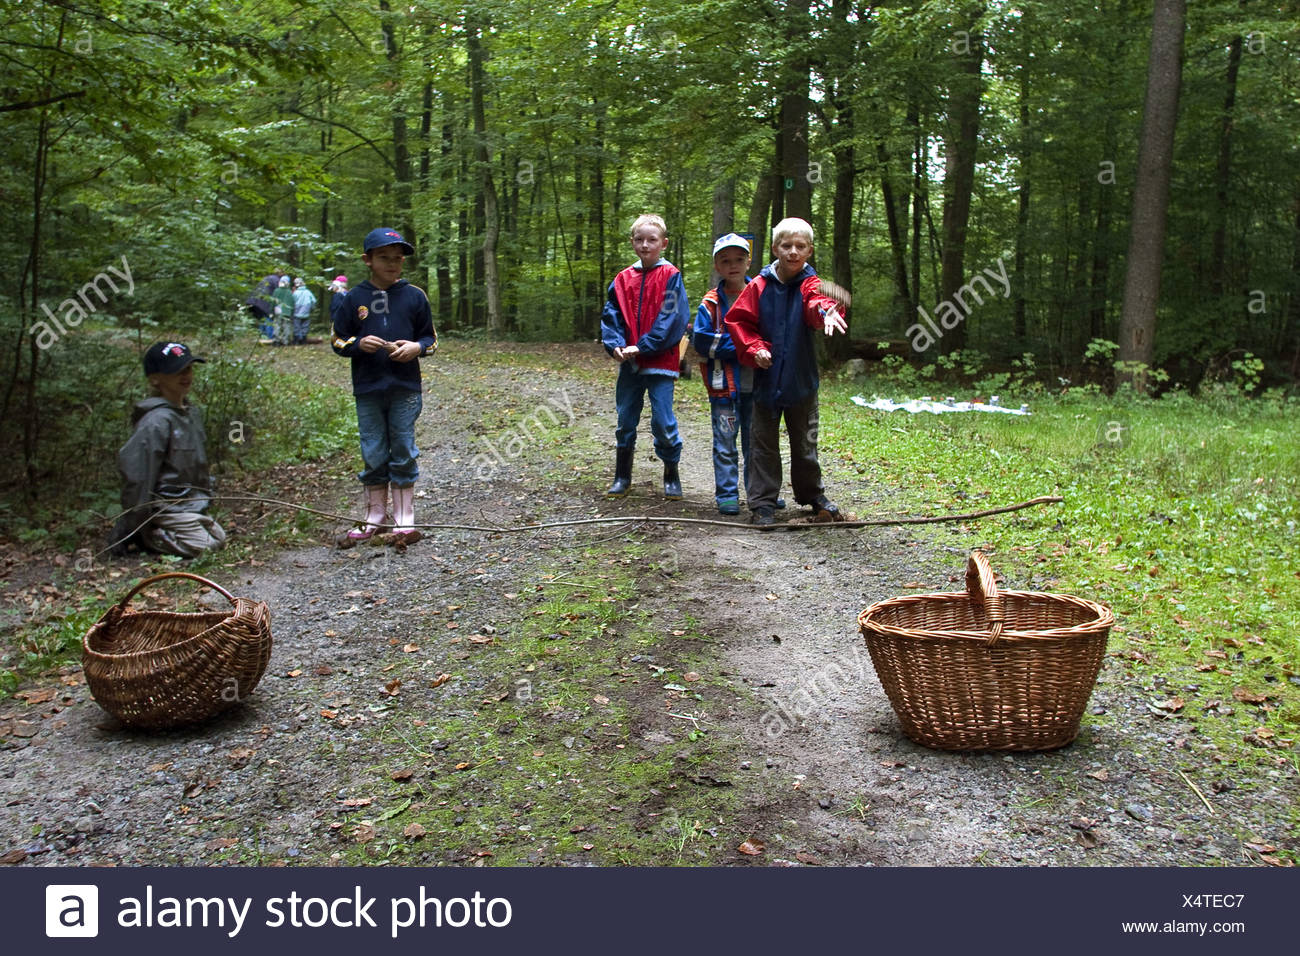 Wald Spiele Kinder Werfen Kegel In Einem Korb Deutschland Stockfotografie Alamy